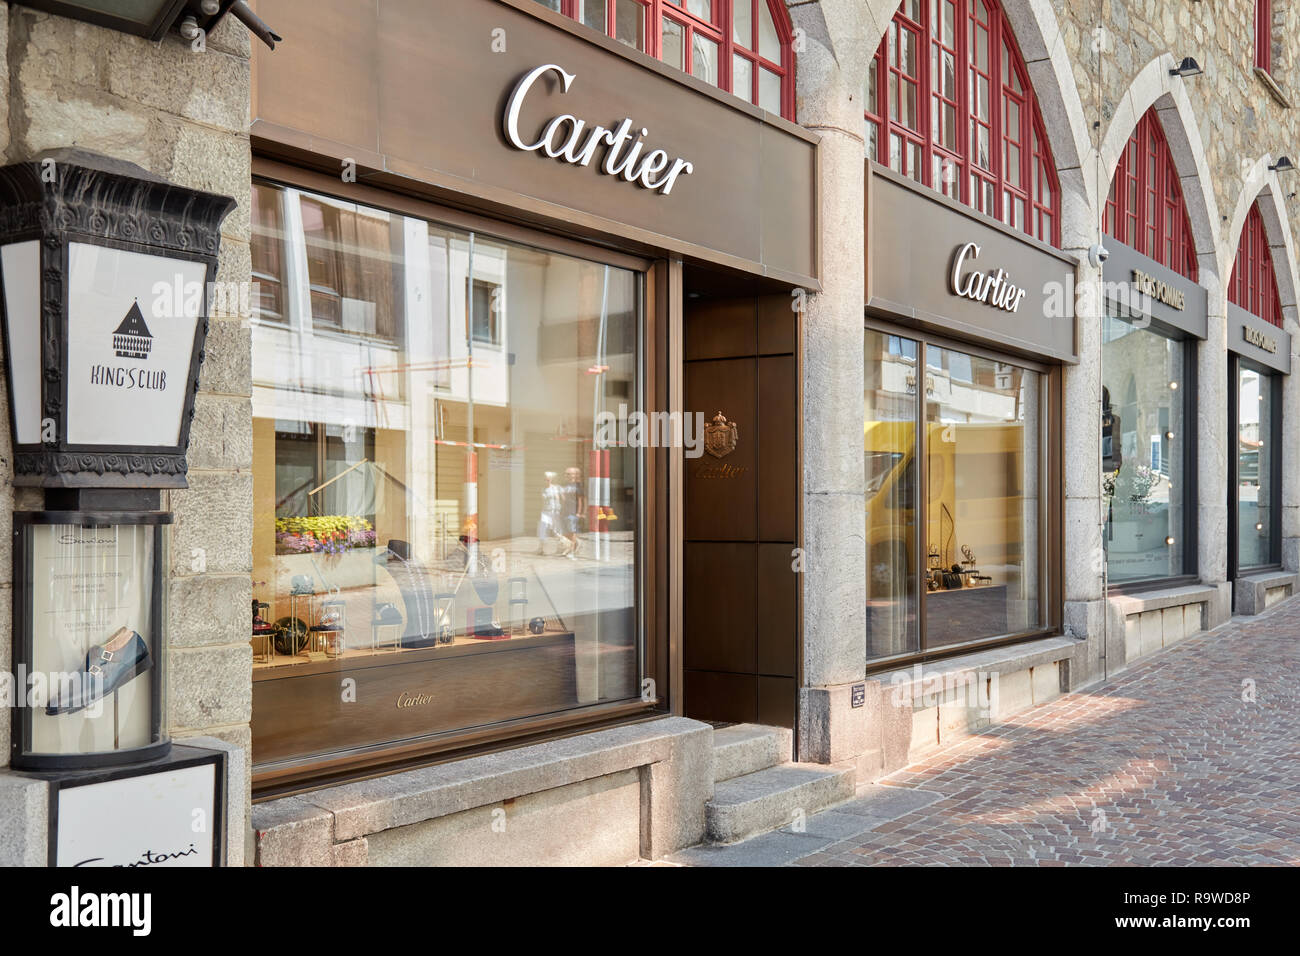 SANKT MORITZ, Svizzera - Agosto 16, 2018: Cartier gioielli di lusso negozio in una soleggiata giornata estiva in Sankt Moritz, Svizzera Foto Stock